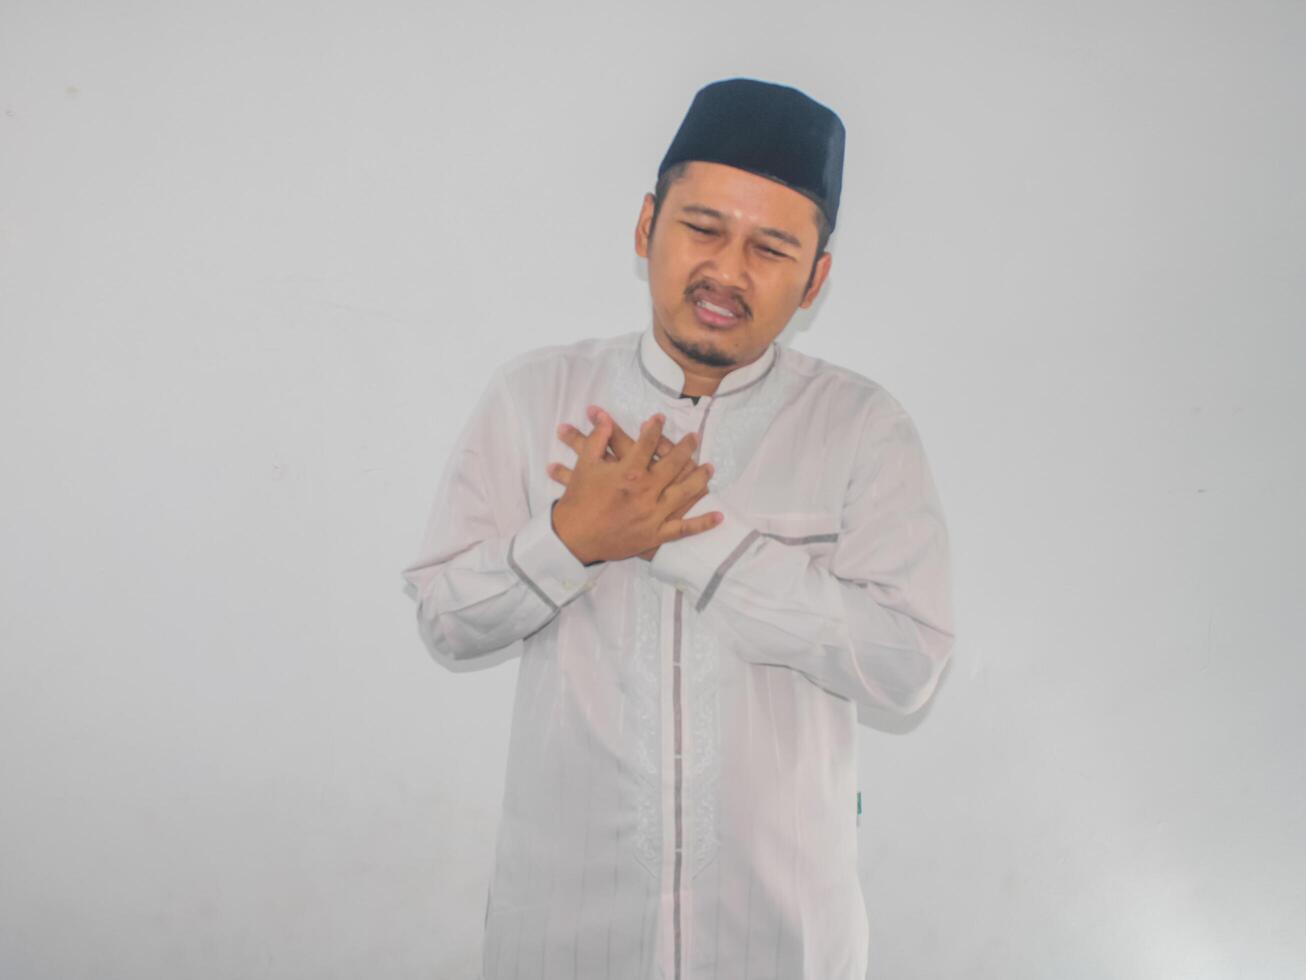 Moslem Erwachsene asiatisch Mann berühren seine Truhe mit Schmerzen Ausdruck foto